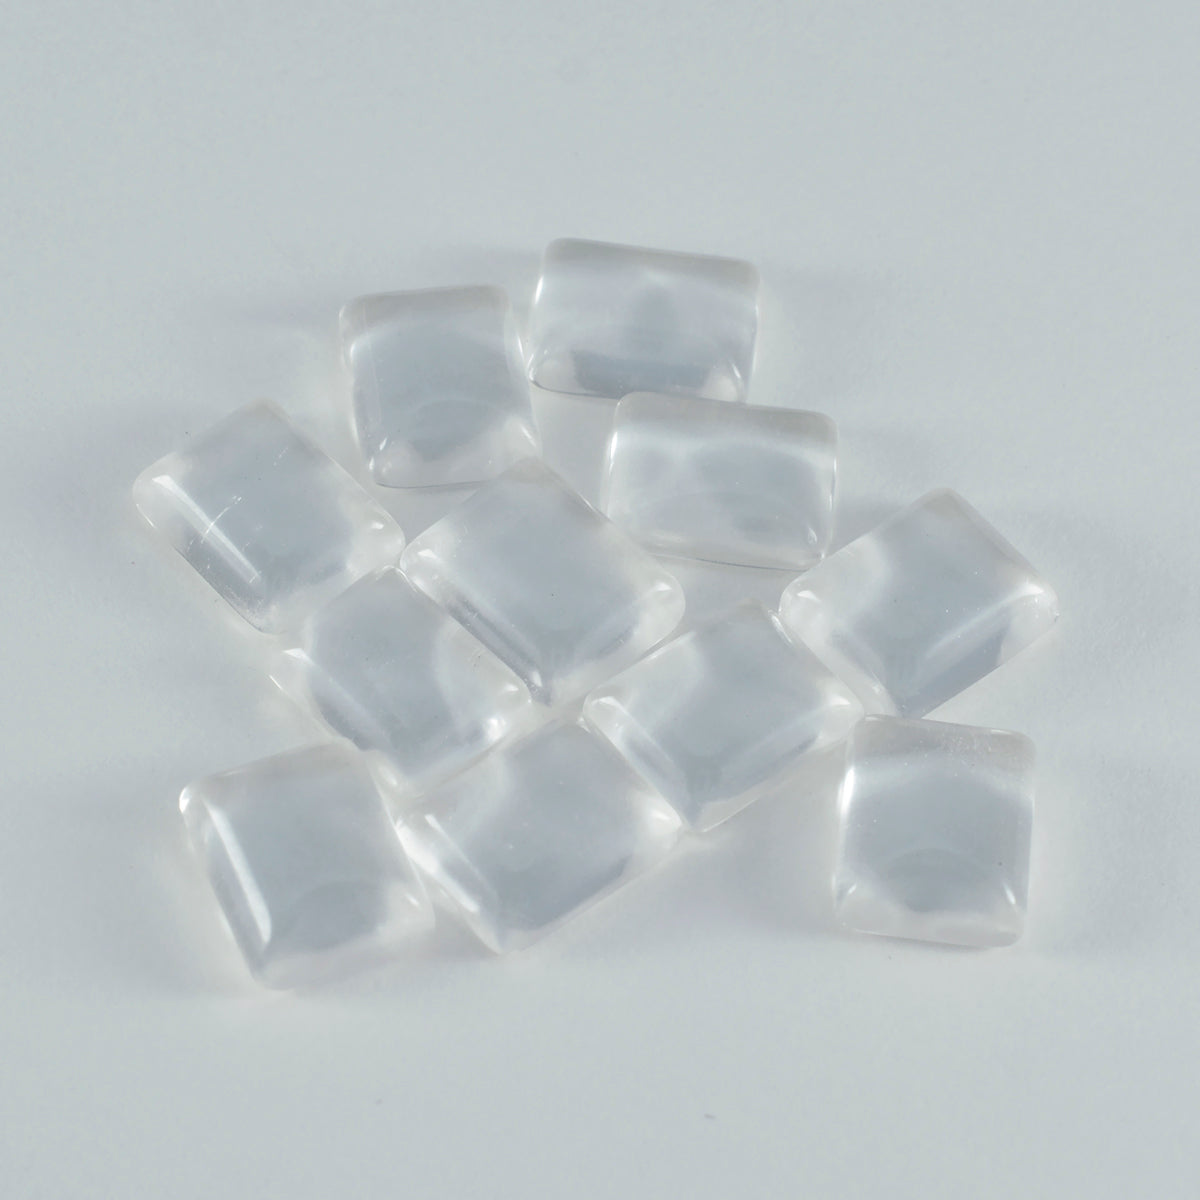 Riyogems 1PC witte kristalkwarts cabochon 10x12 mm achthoekige vorm fantastische kwaliteit losse steen